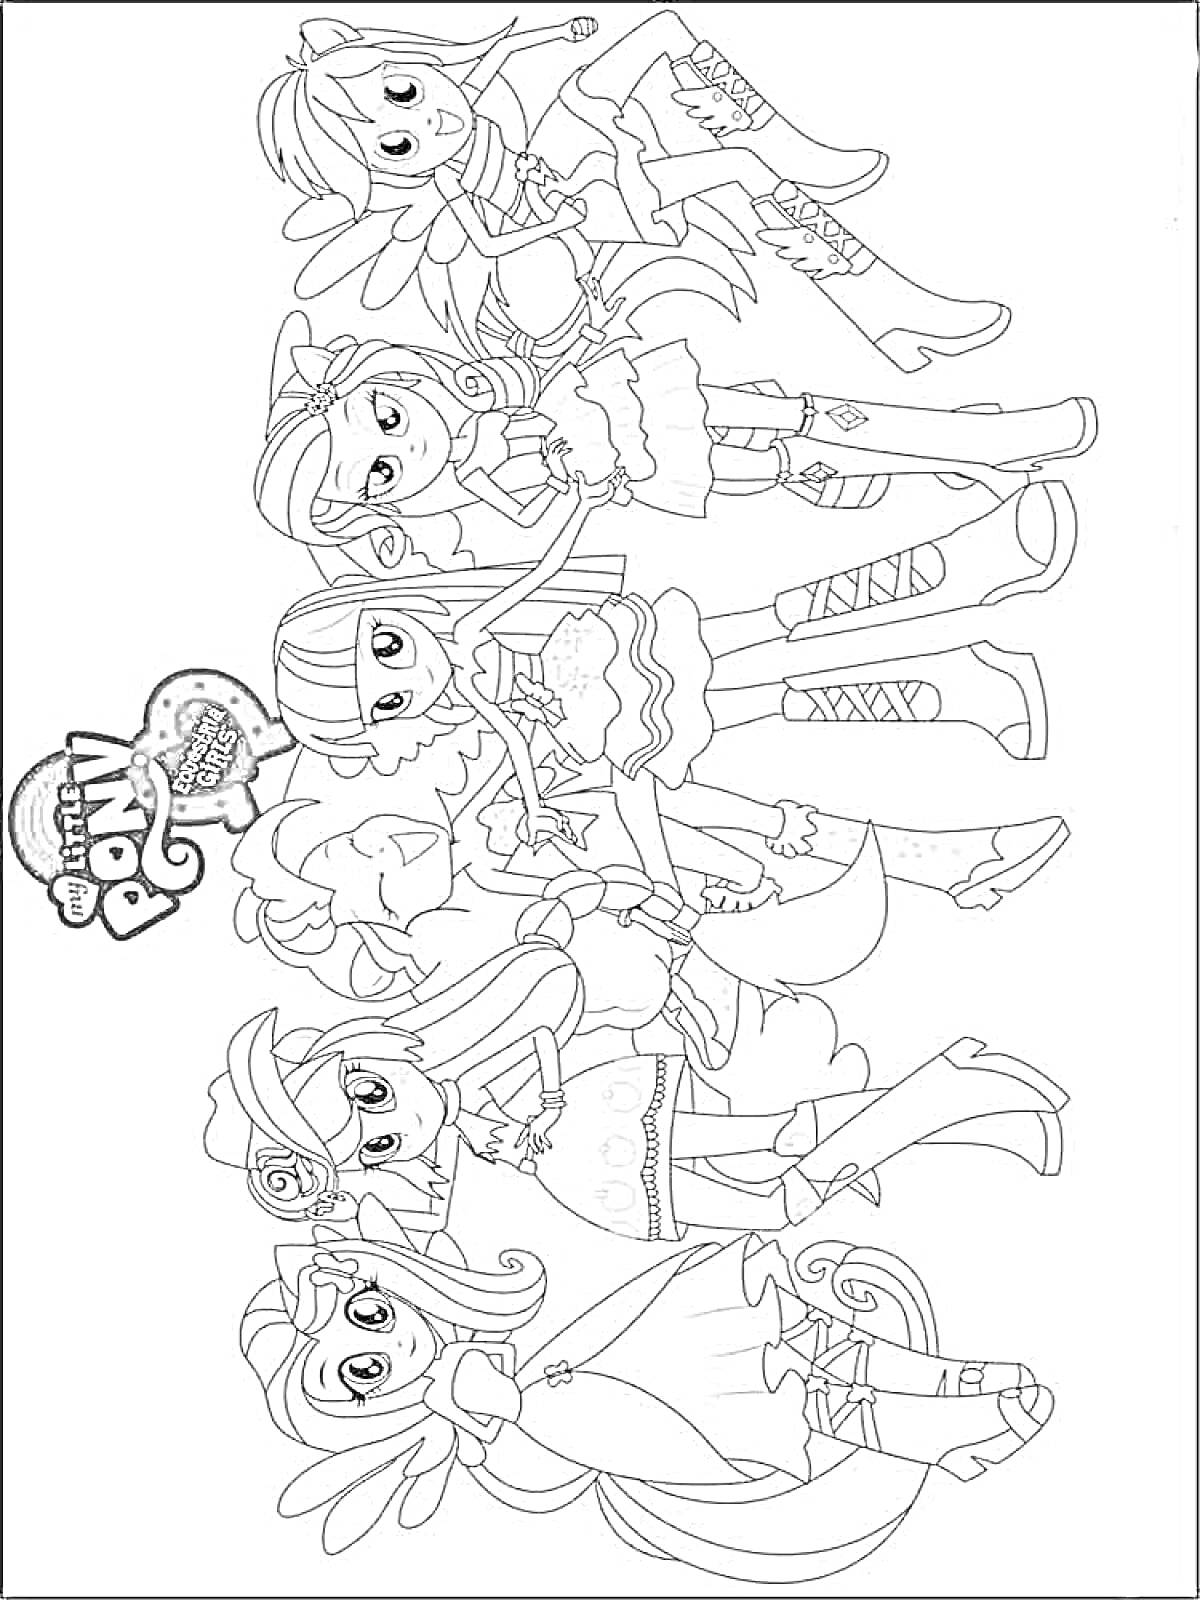 Раскраска Шесть персонажей Эквестрия Герлз в разных нарядах, бок о бок, с логотипом My Little Pony в левом нижнем углу